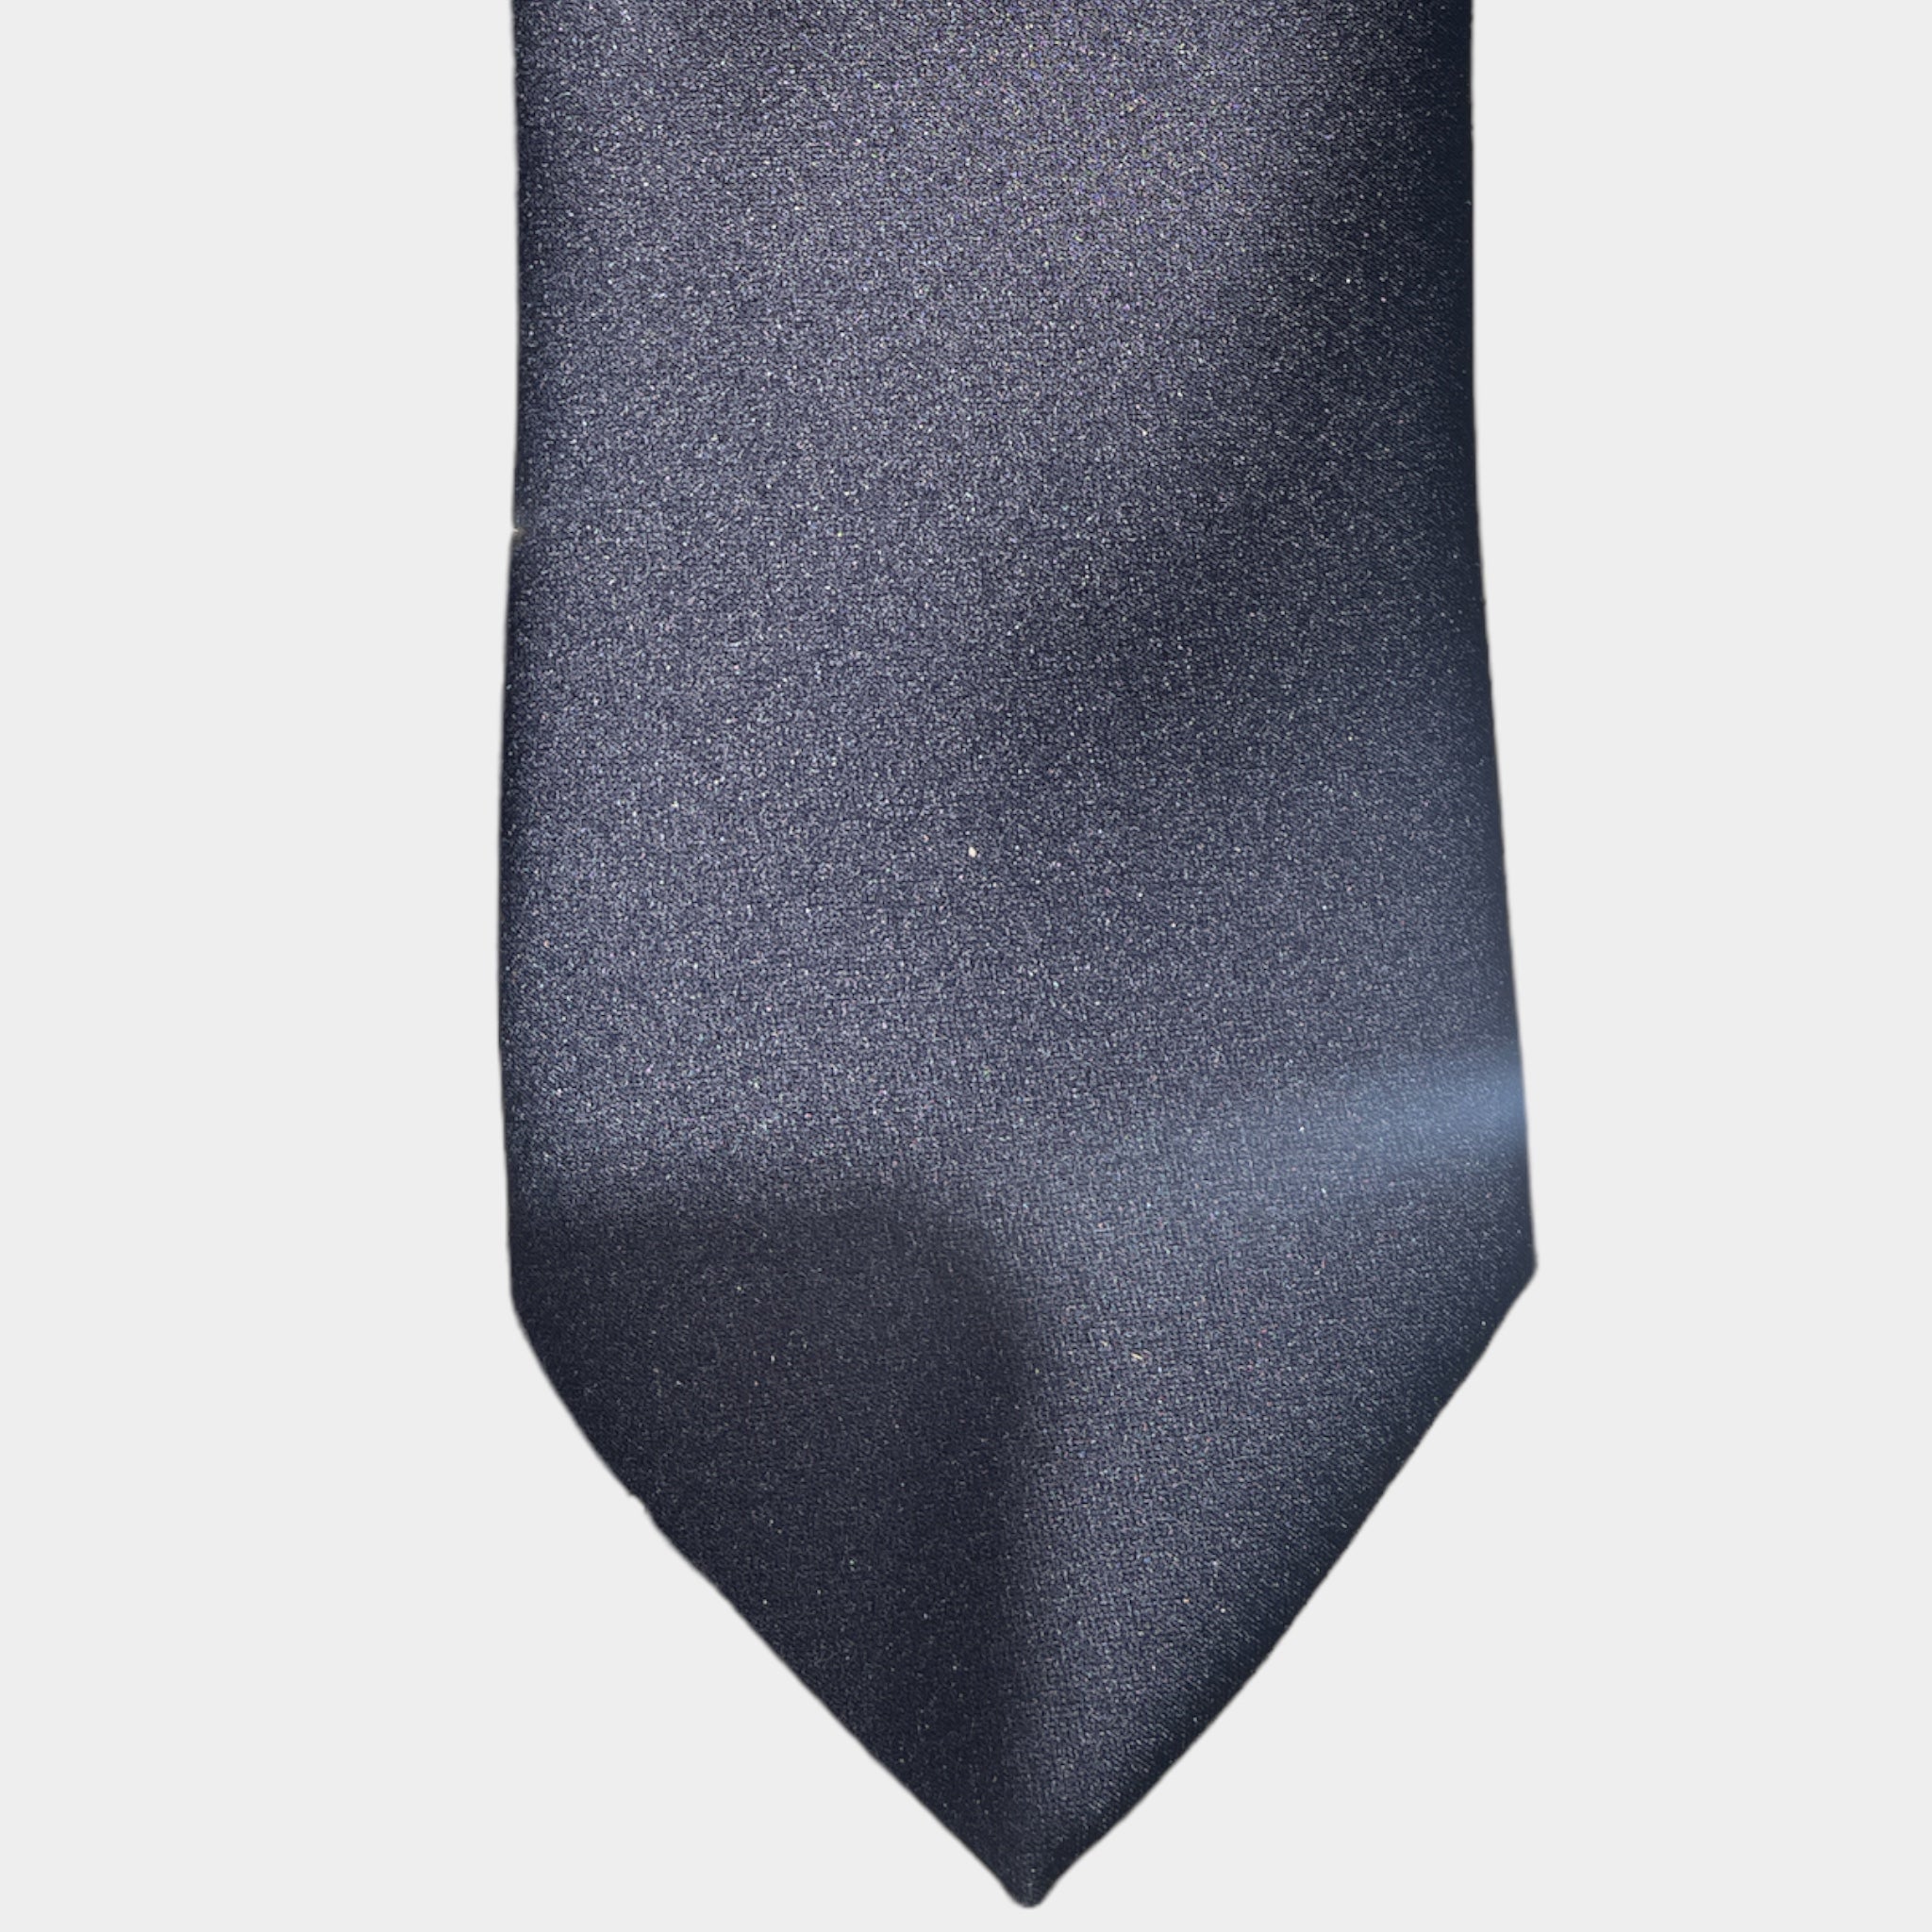 Cravatta Uomo cm 8 Seta Twill Unito